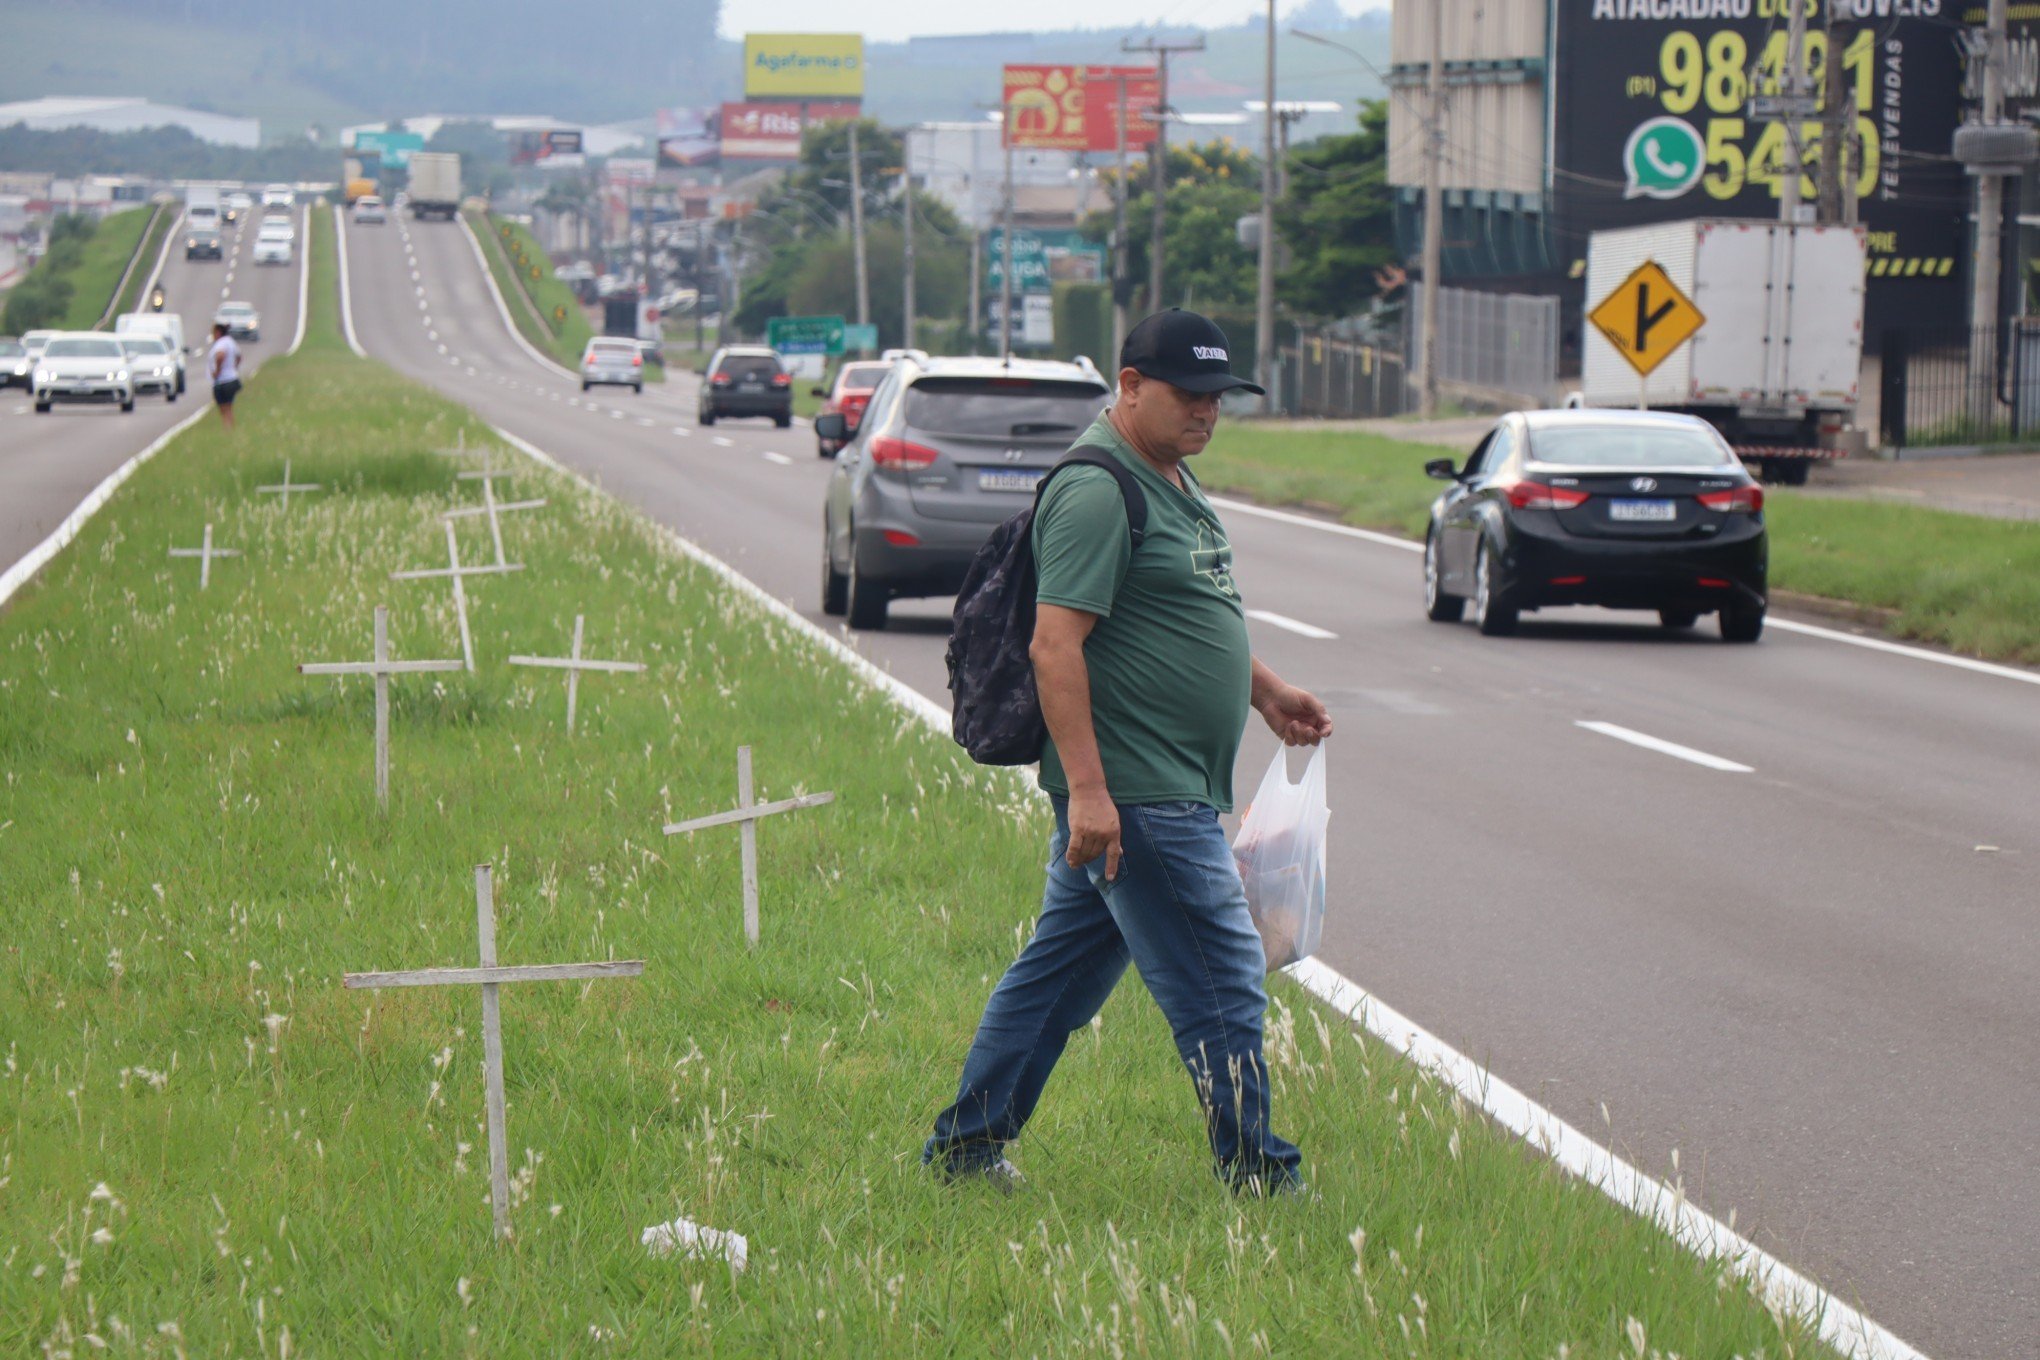 Moradores e autoridades cobram solução para mortes na RS-239; "Essa rodovia é violenta", diz pedestre